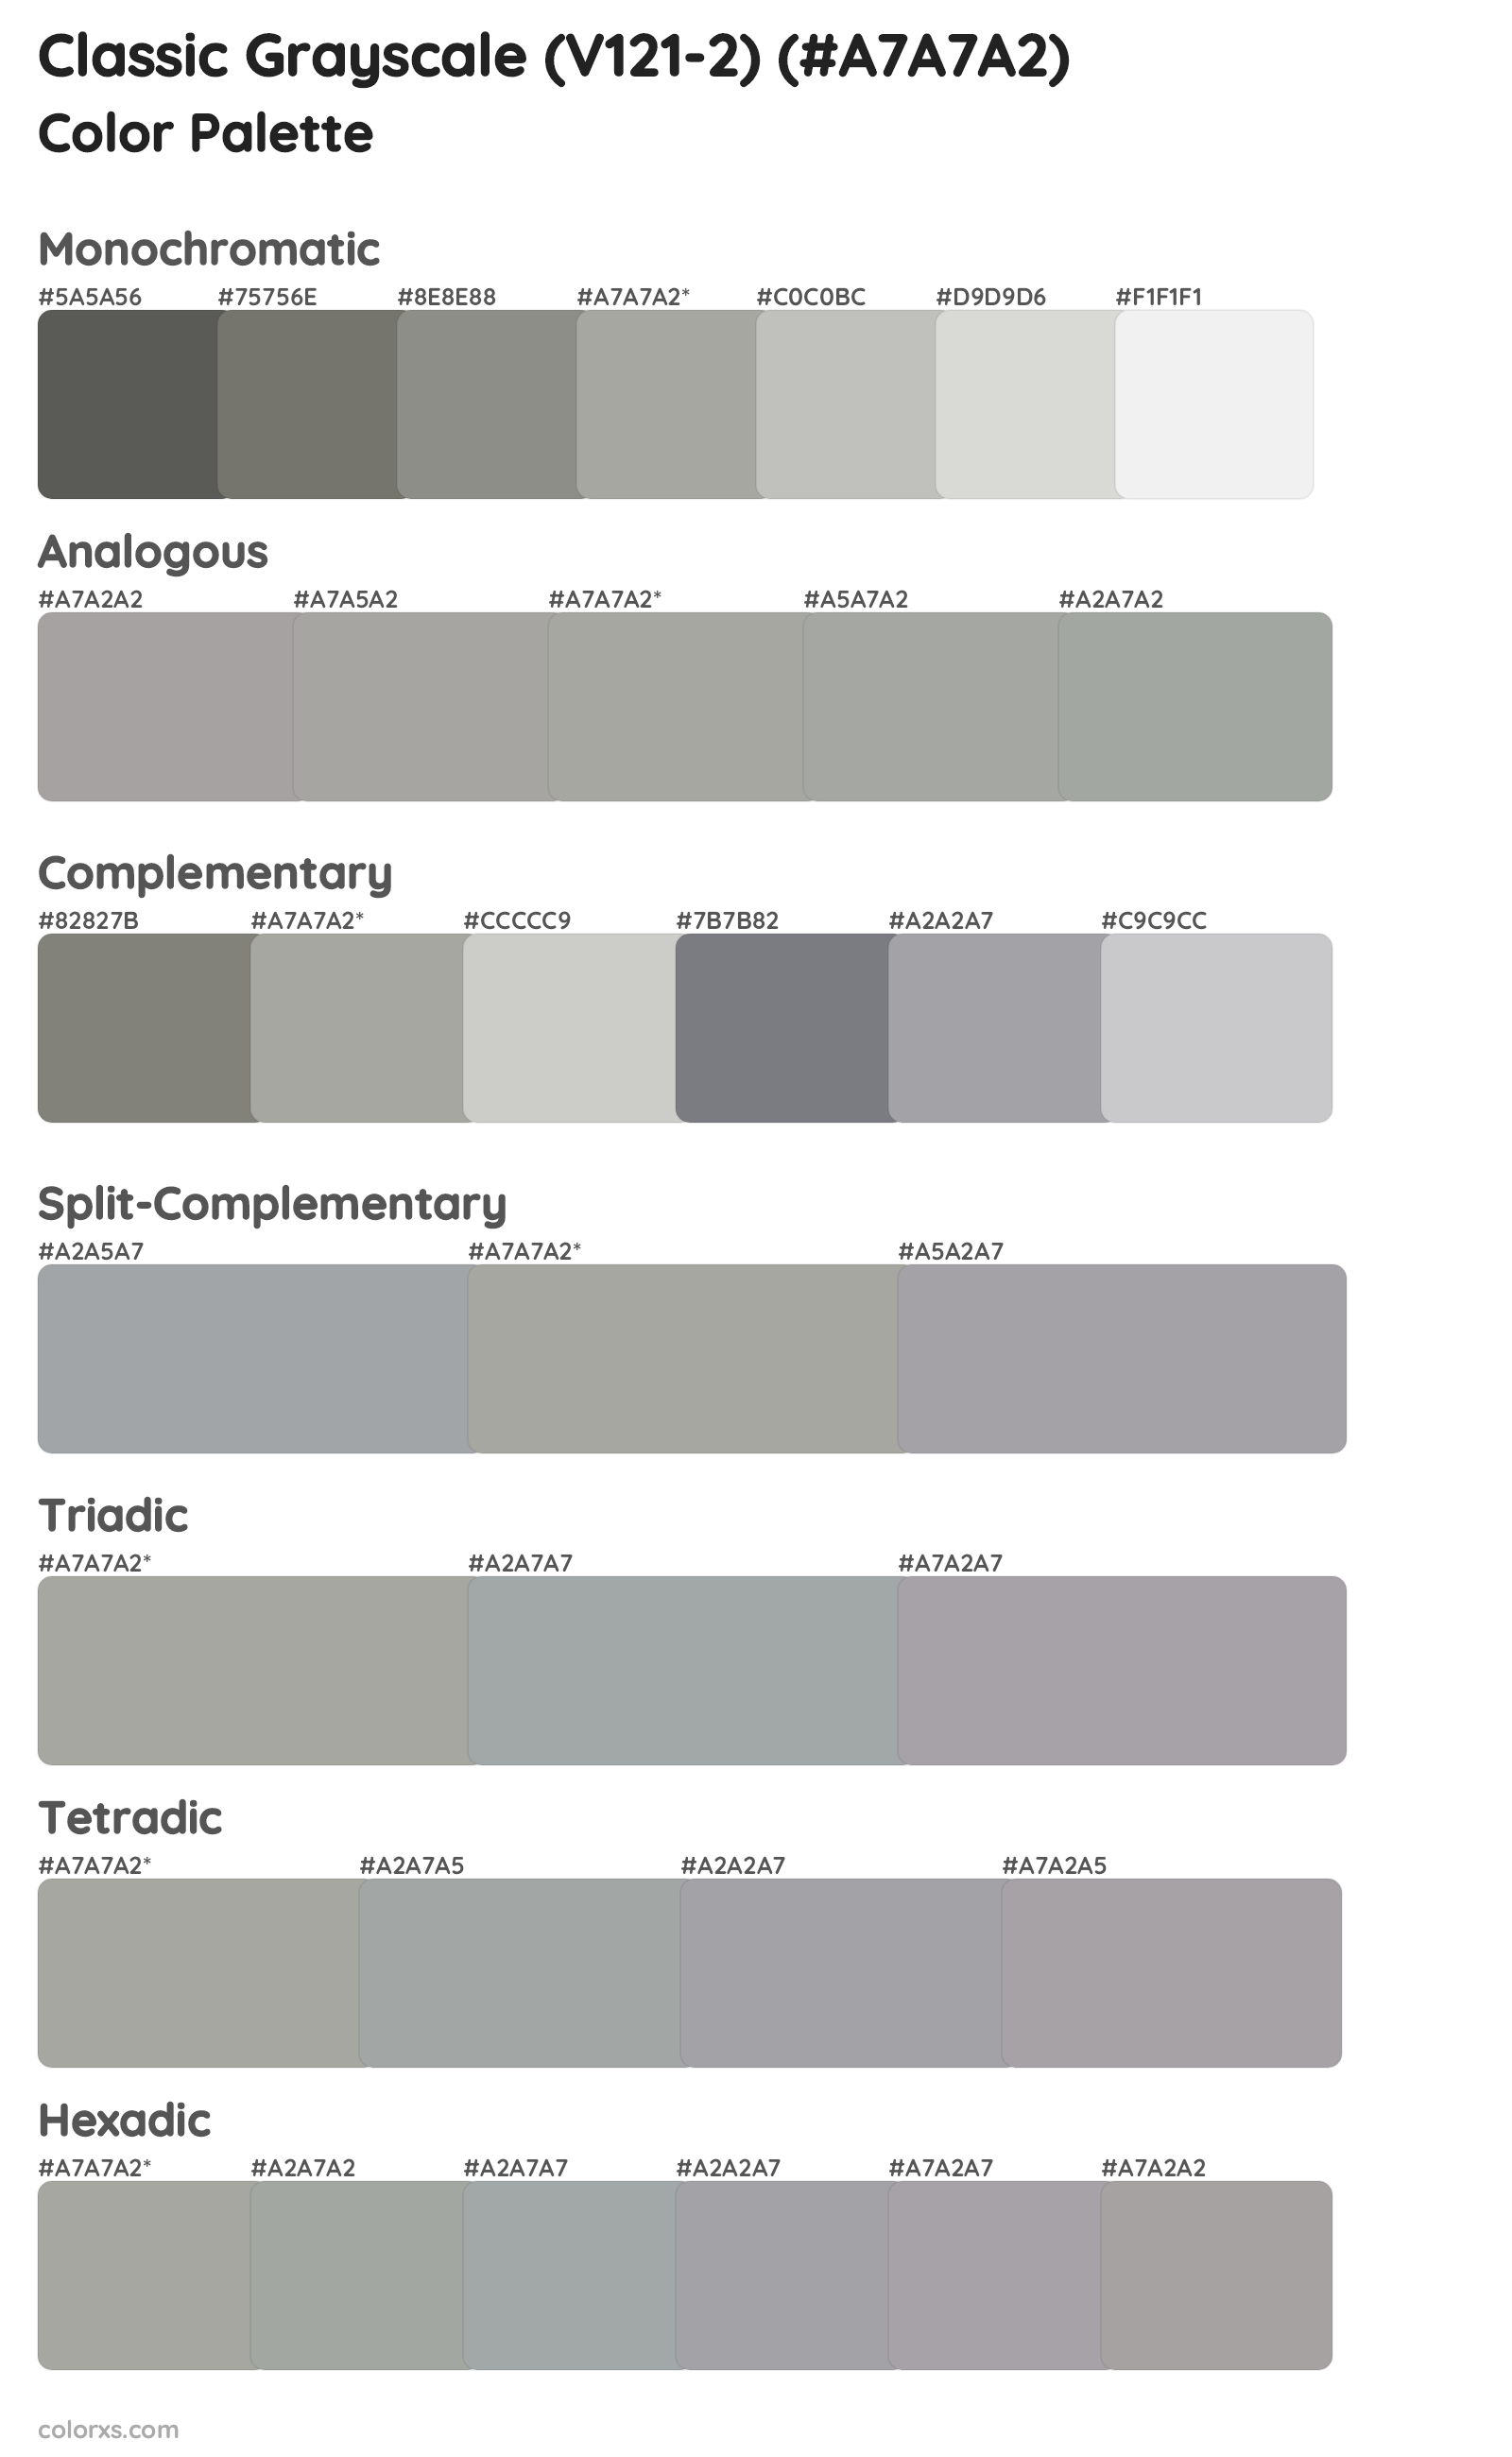 Classic Grayscale (V121-2) Color Scheme Palettes